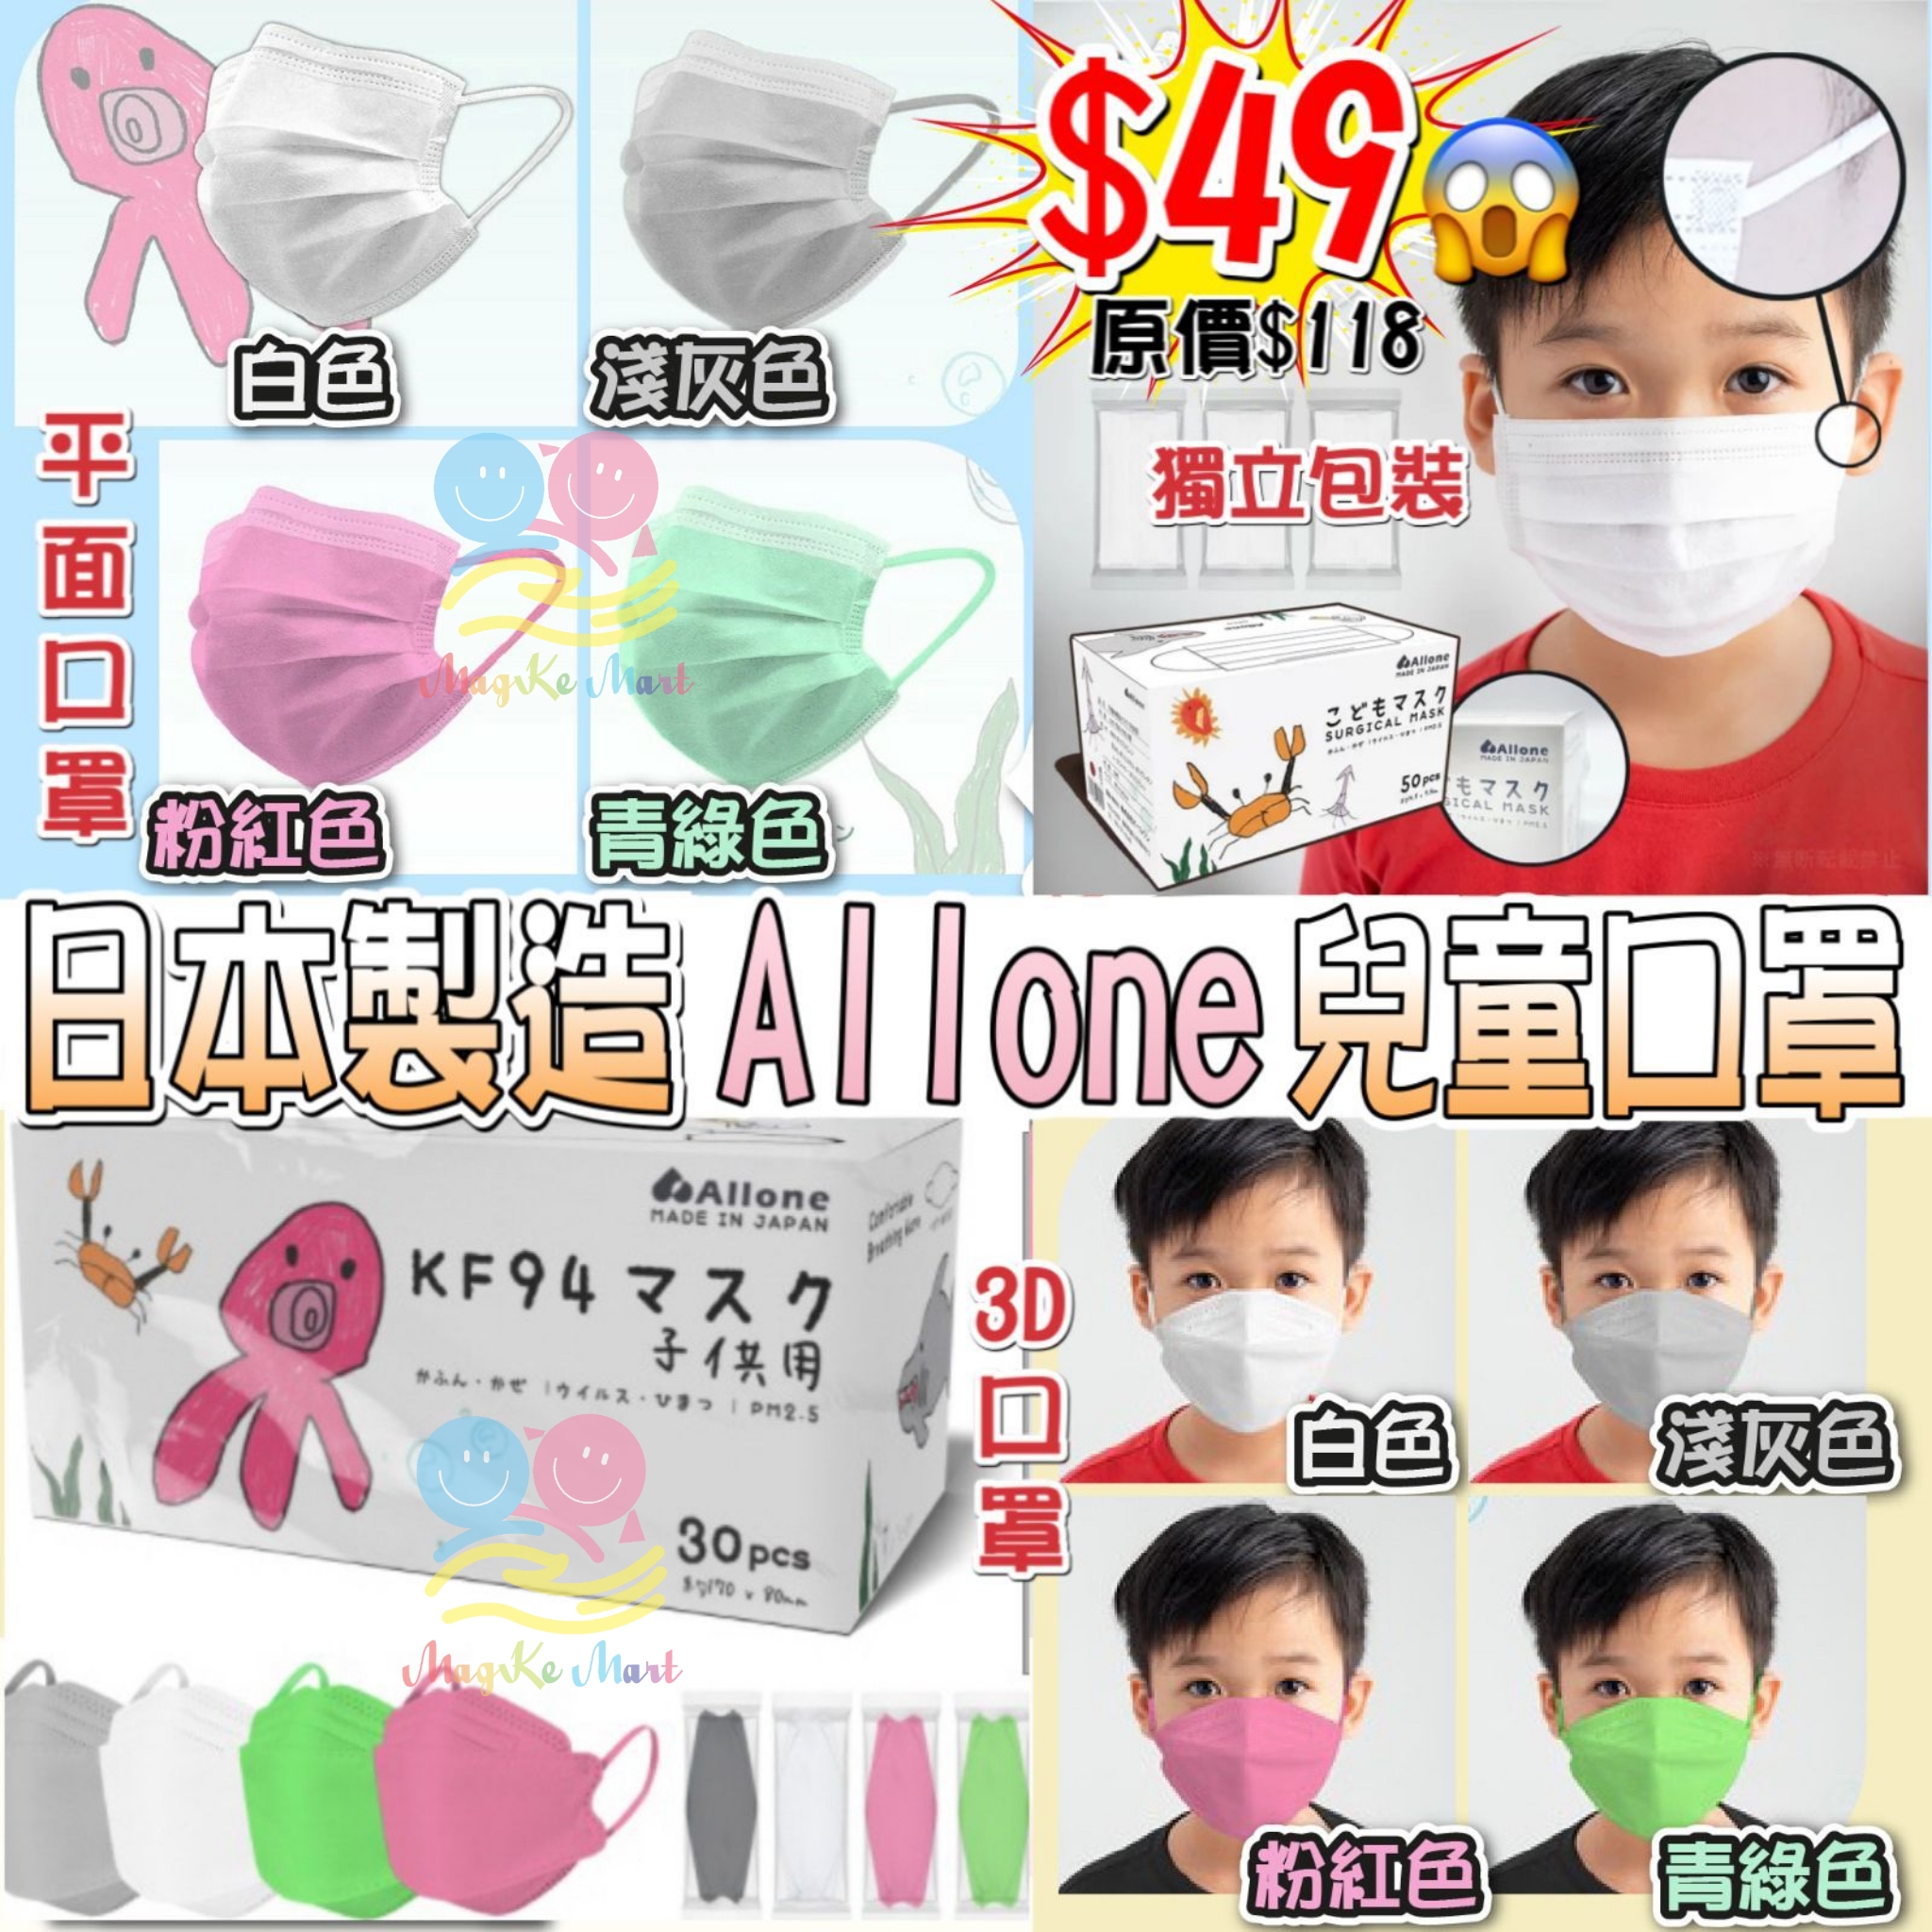 日本製 Allone 高密度不織布兒童口罩系列(獨立包裝) (A) 白色平面口罩(1盒50個)